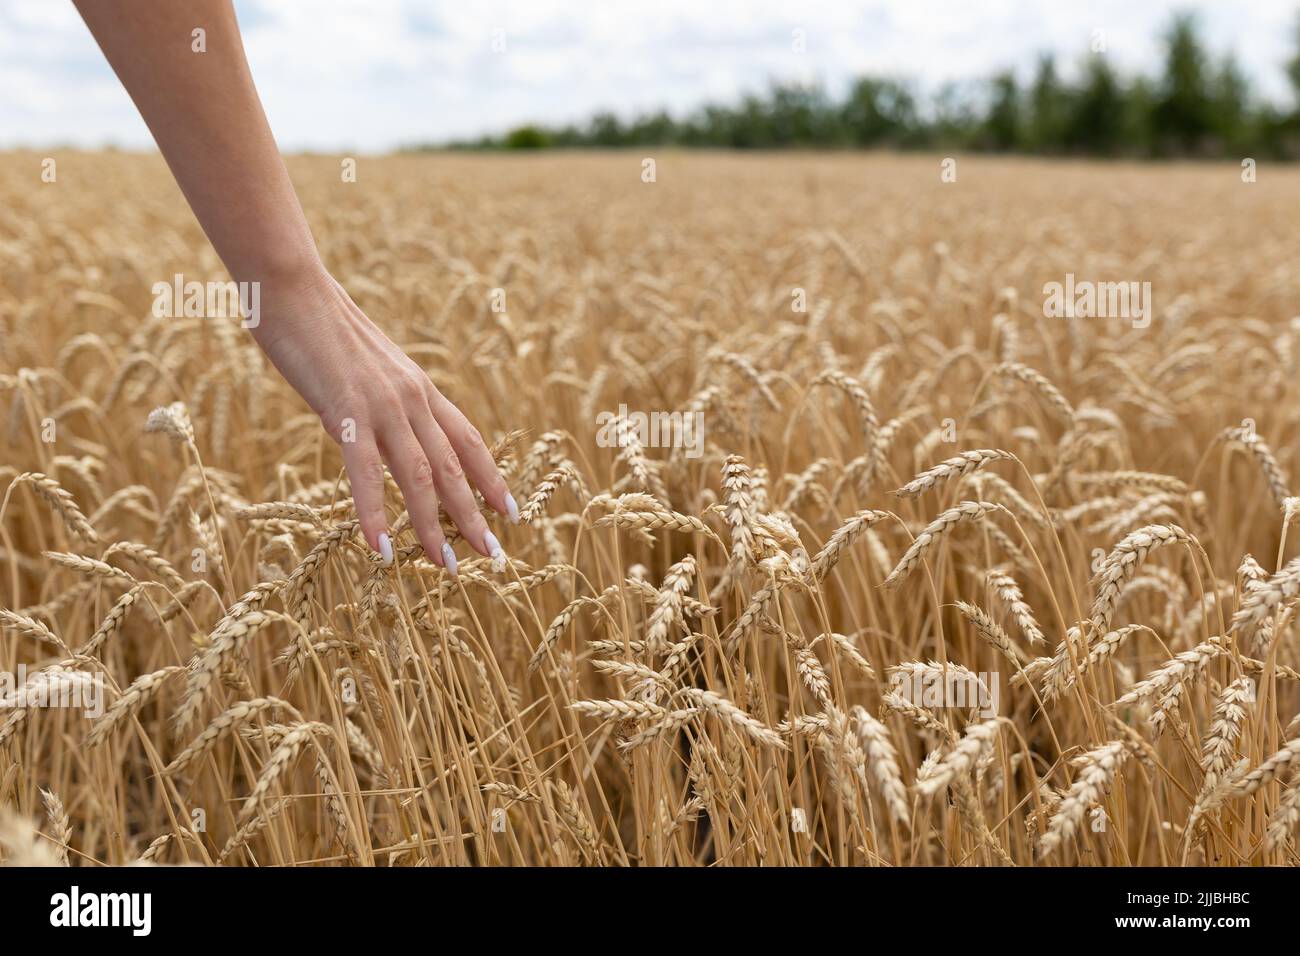 pays, nature, vacances d'été, agriculture et concept de peuple - gros plan de la jeune femme touchant à la main des épillets dans le champ de blé d'or Banque D'Images